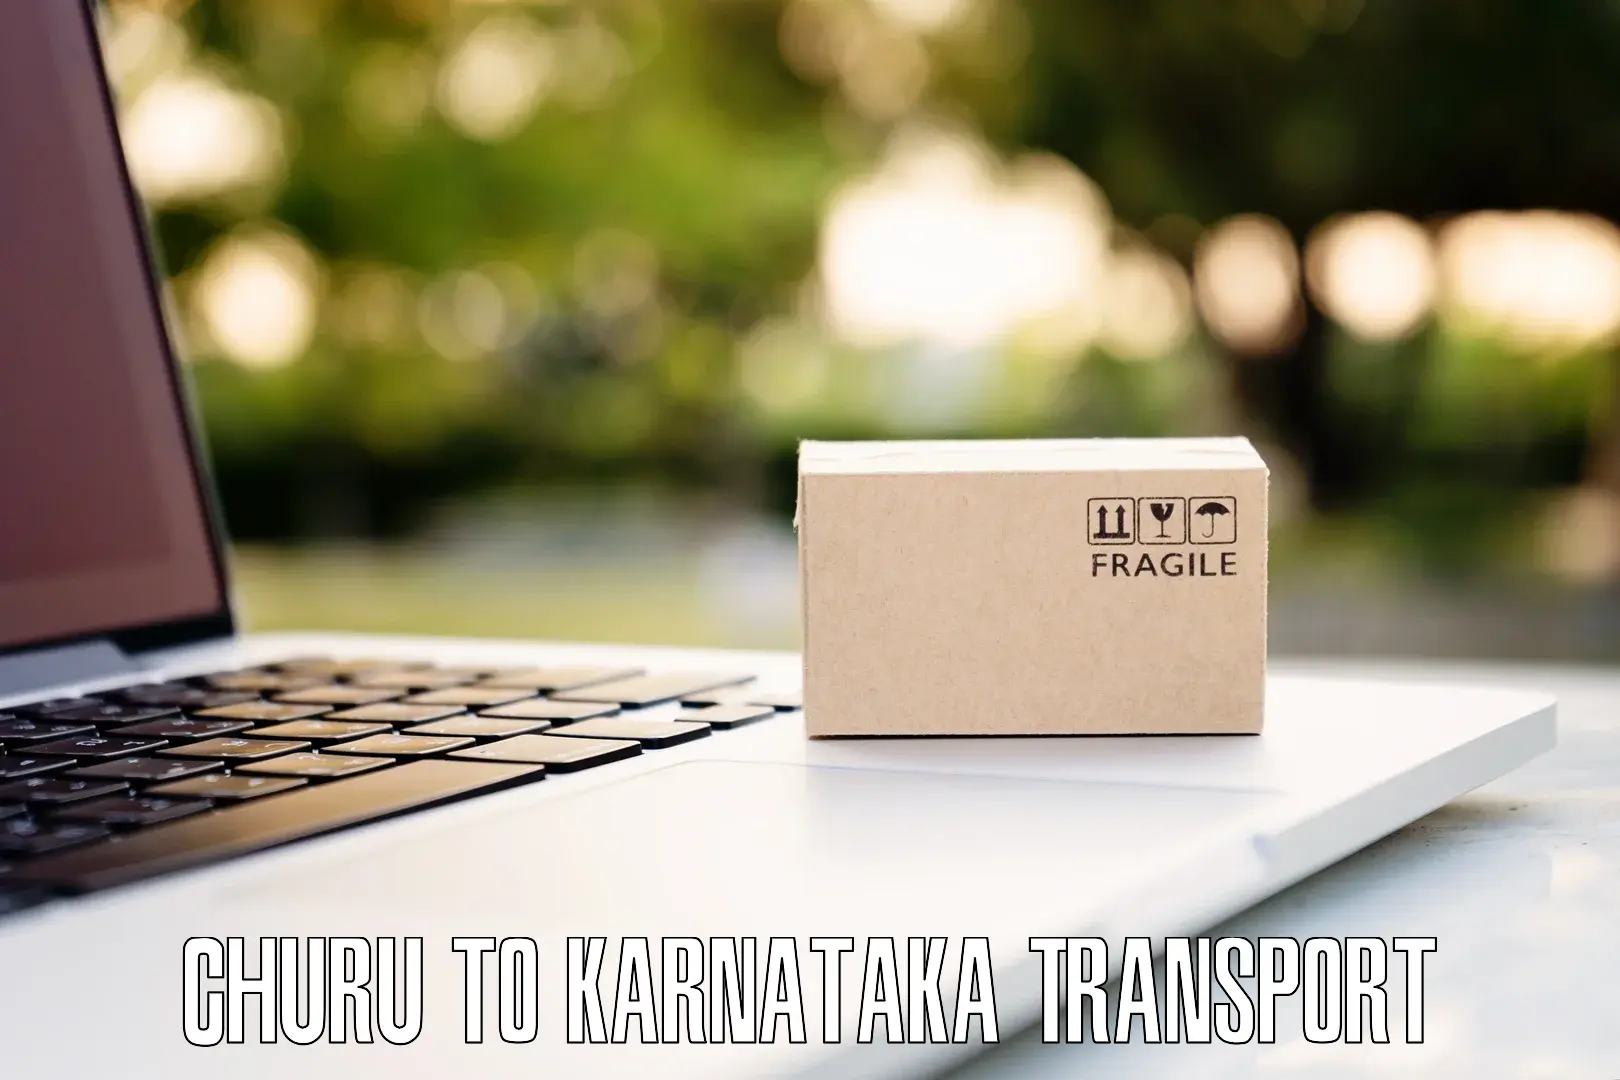 Cargo transportation services Churu to Kanakapura